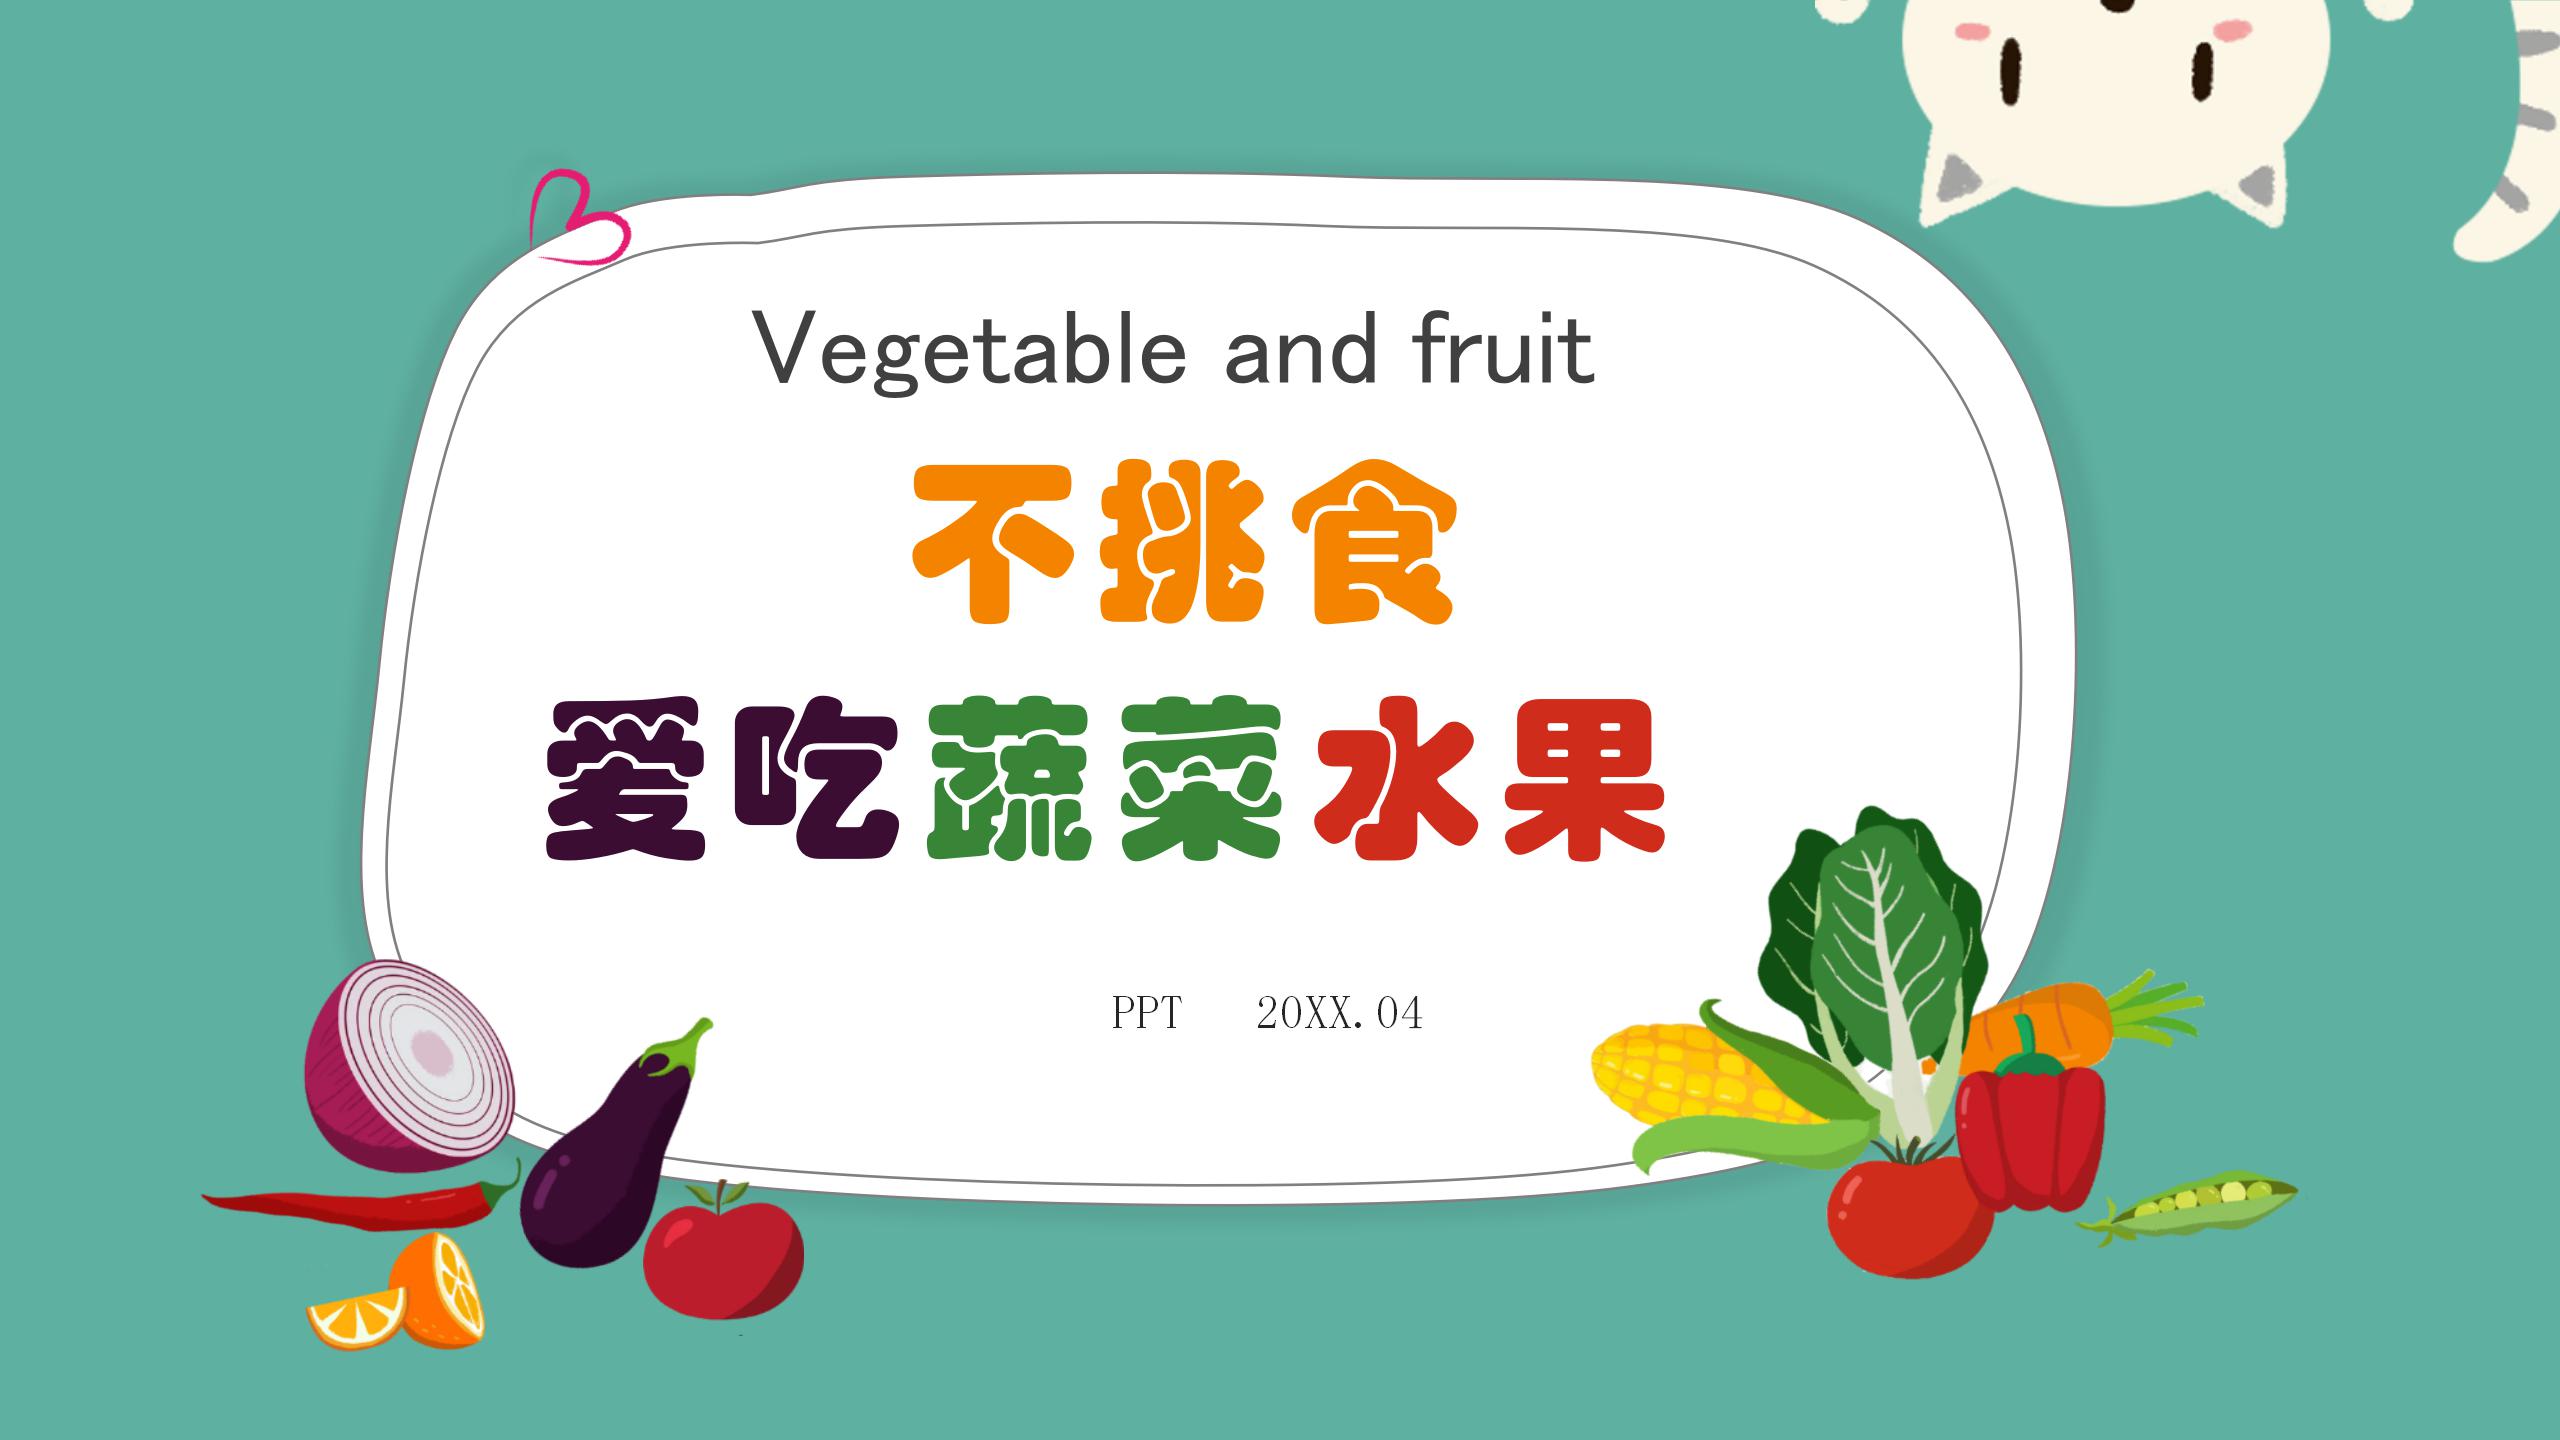 水果有机蔬菜农产品ppt模板